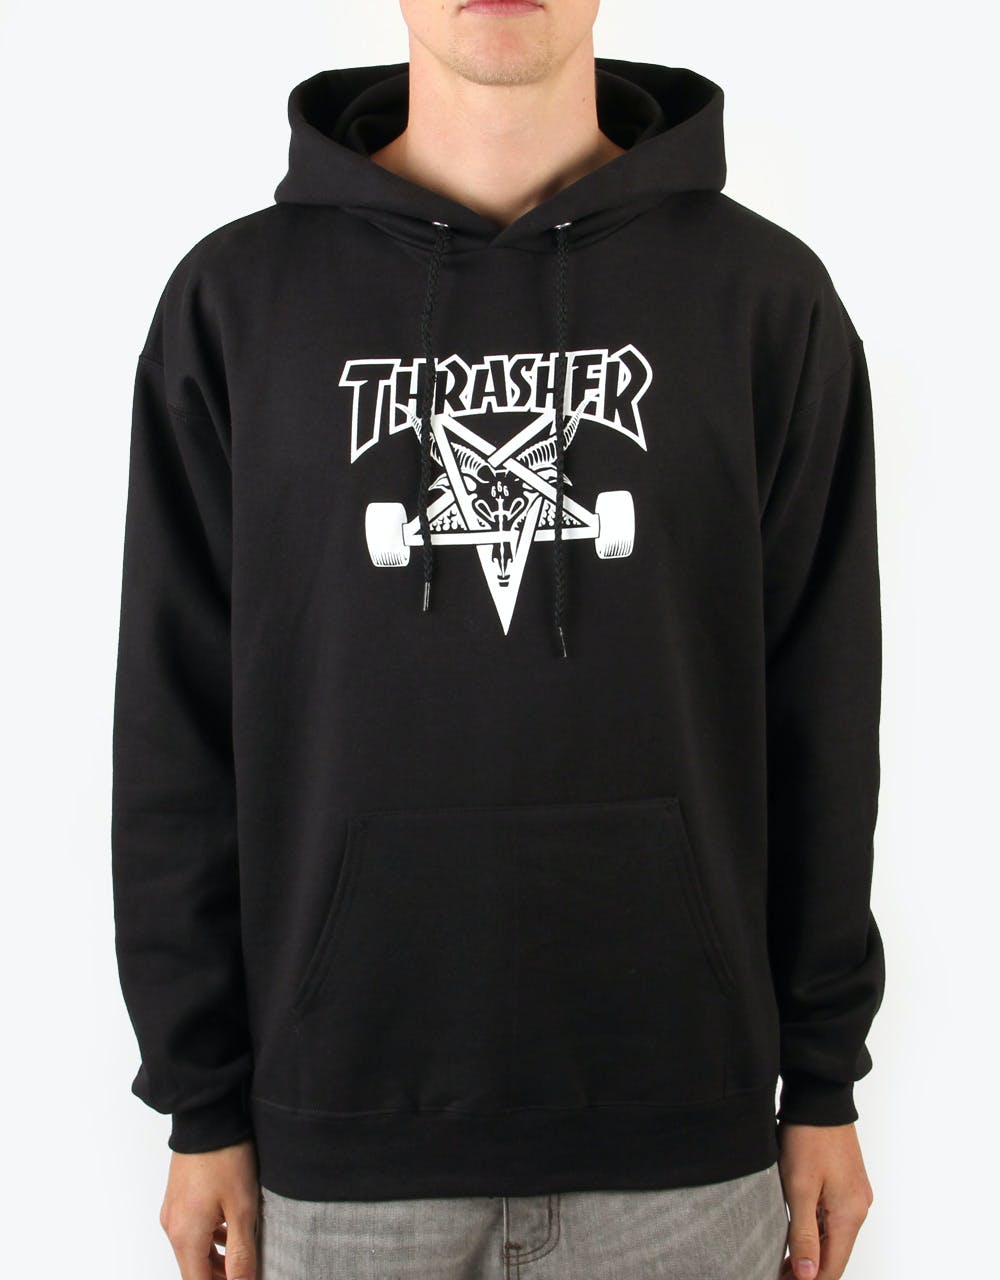 Thrasher Skate Goat Pullover Hoodie - Black